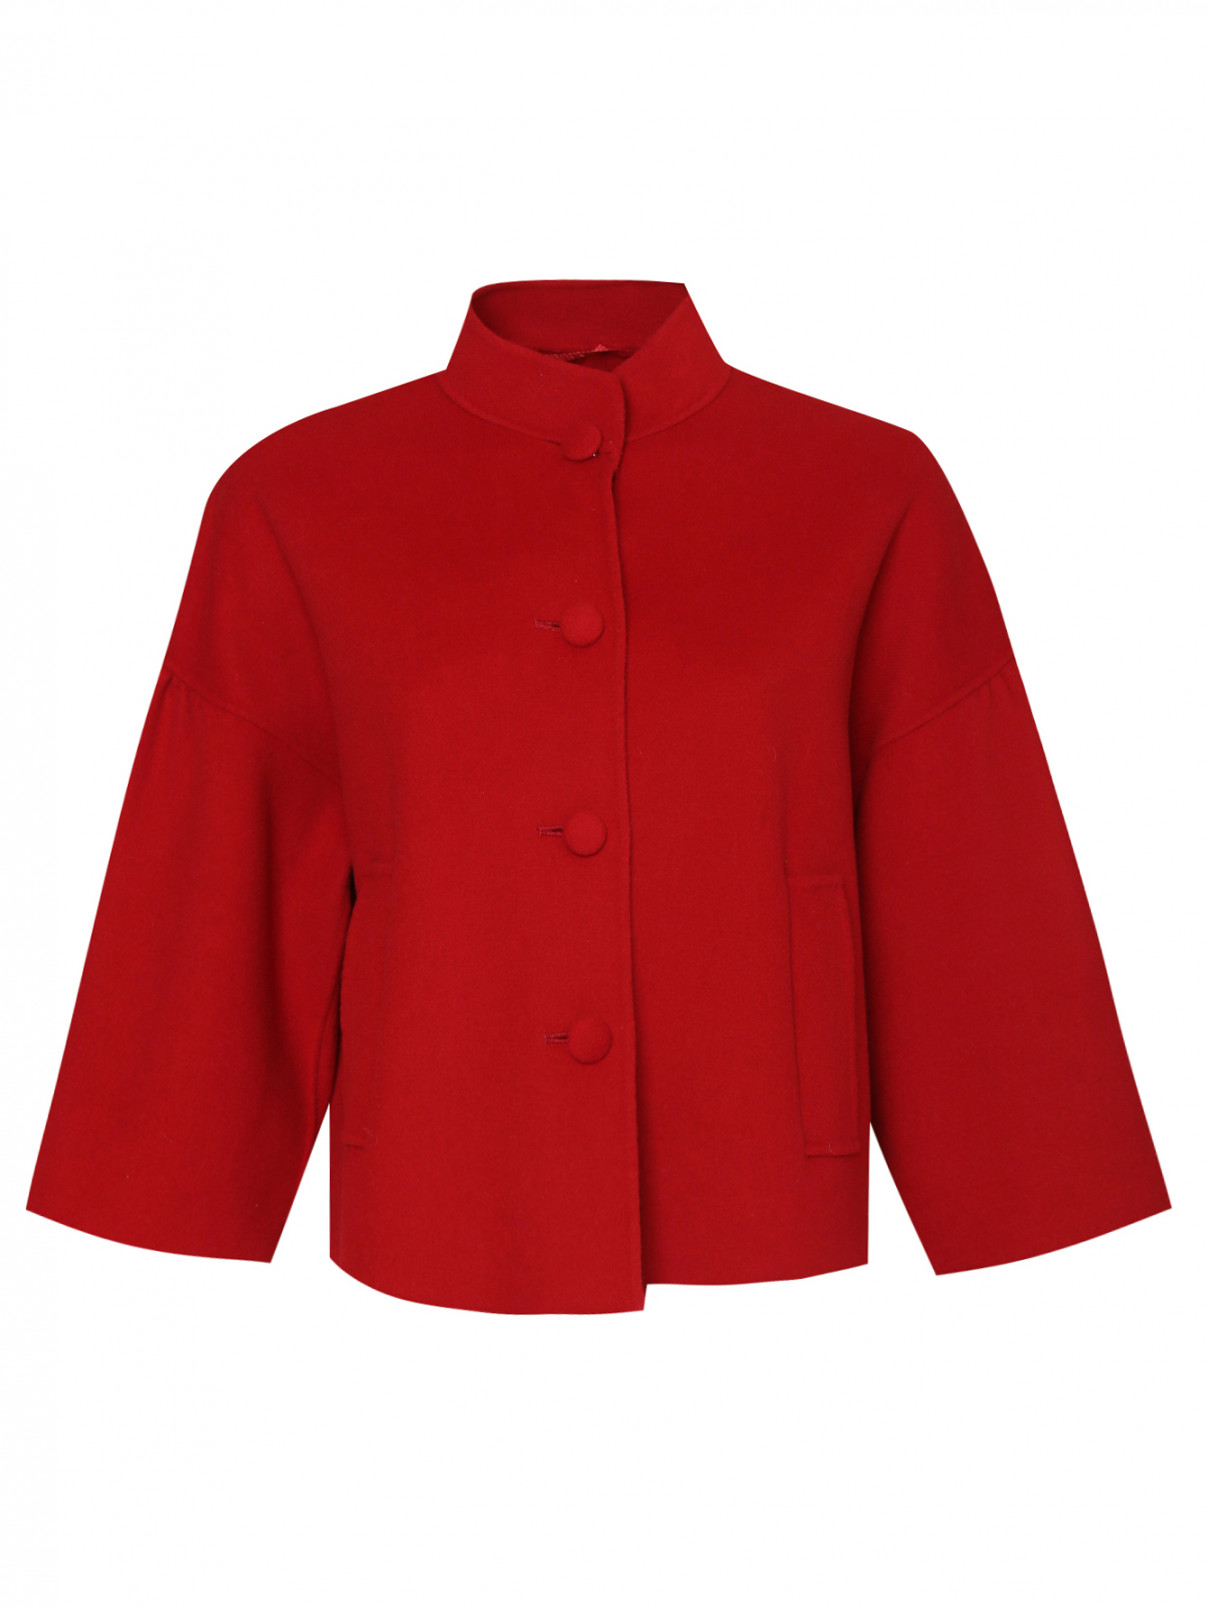 Полупальто из шерсти с карманами Weekend Max Mara  –  Общий вид  – Цвет:  Красный